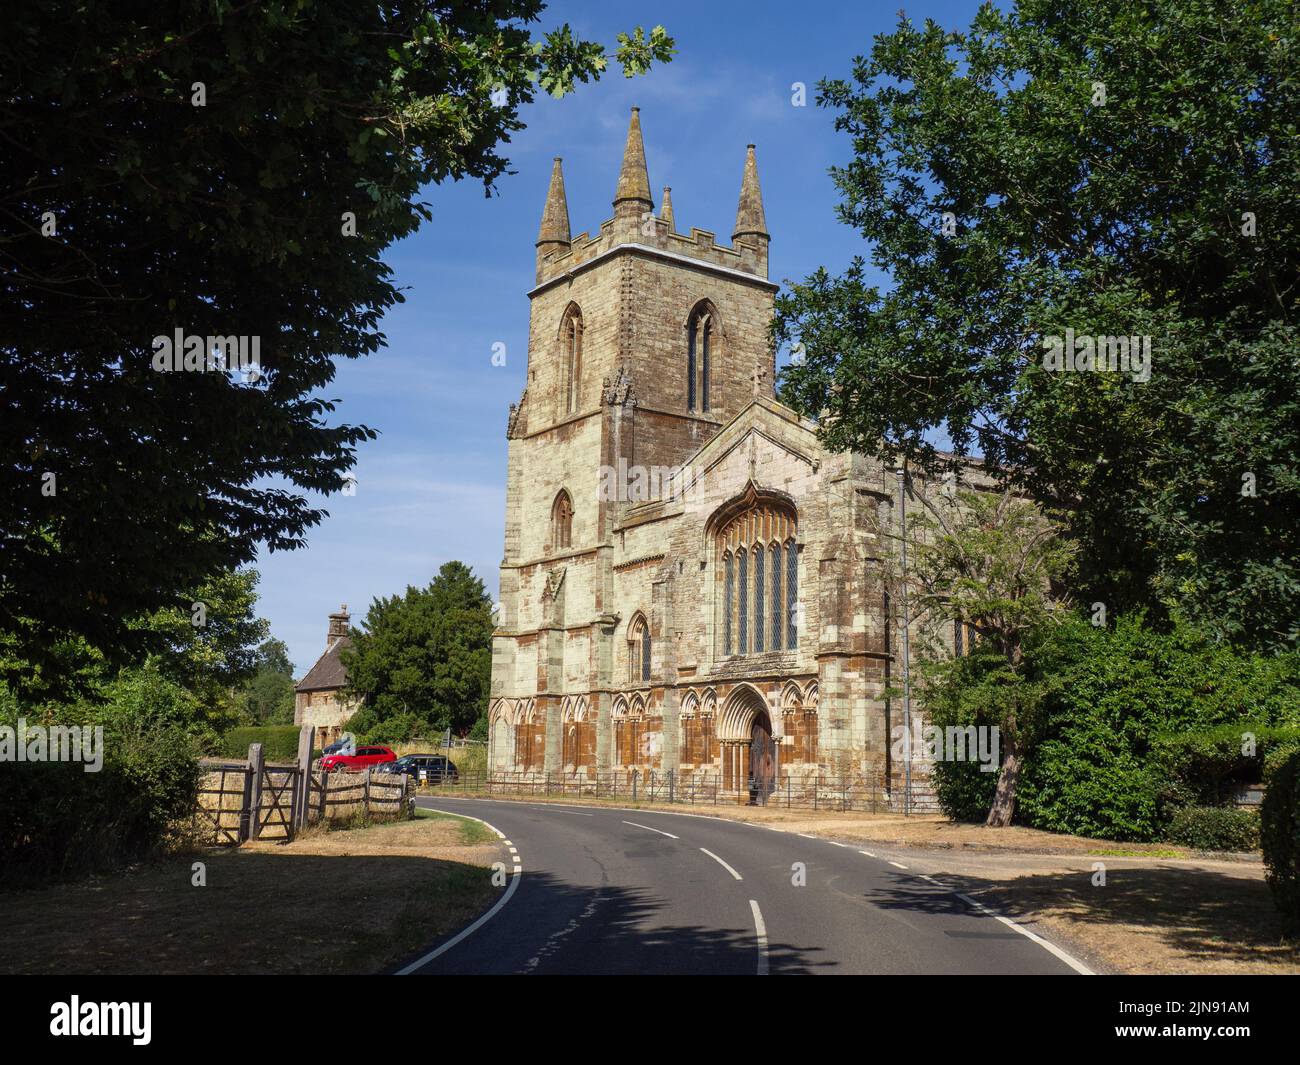 La iglesia de Santa María en la aldea de Canons Ashby, Northamptonshire, Reino Unido; incorpora fragmentos de un priorato San Agustín del siglo XII. Foto de stock